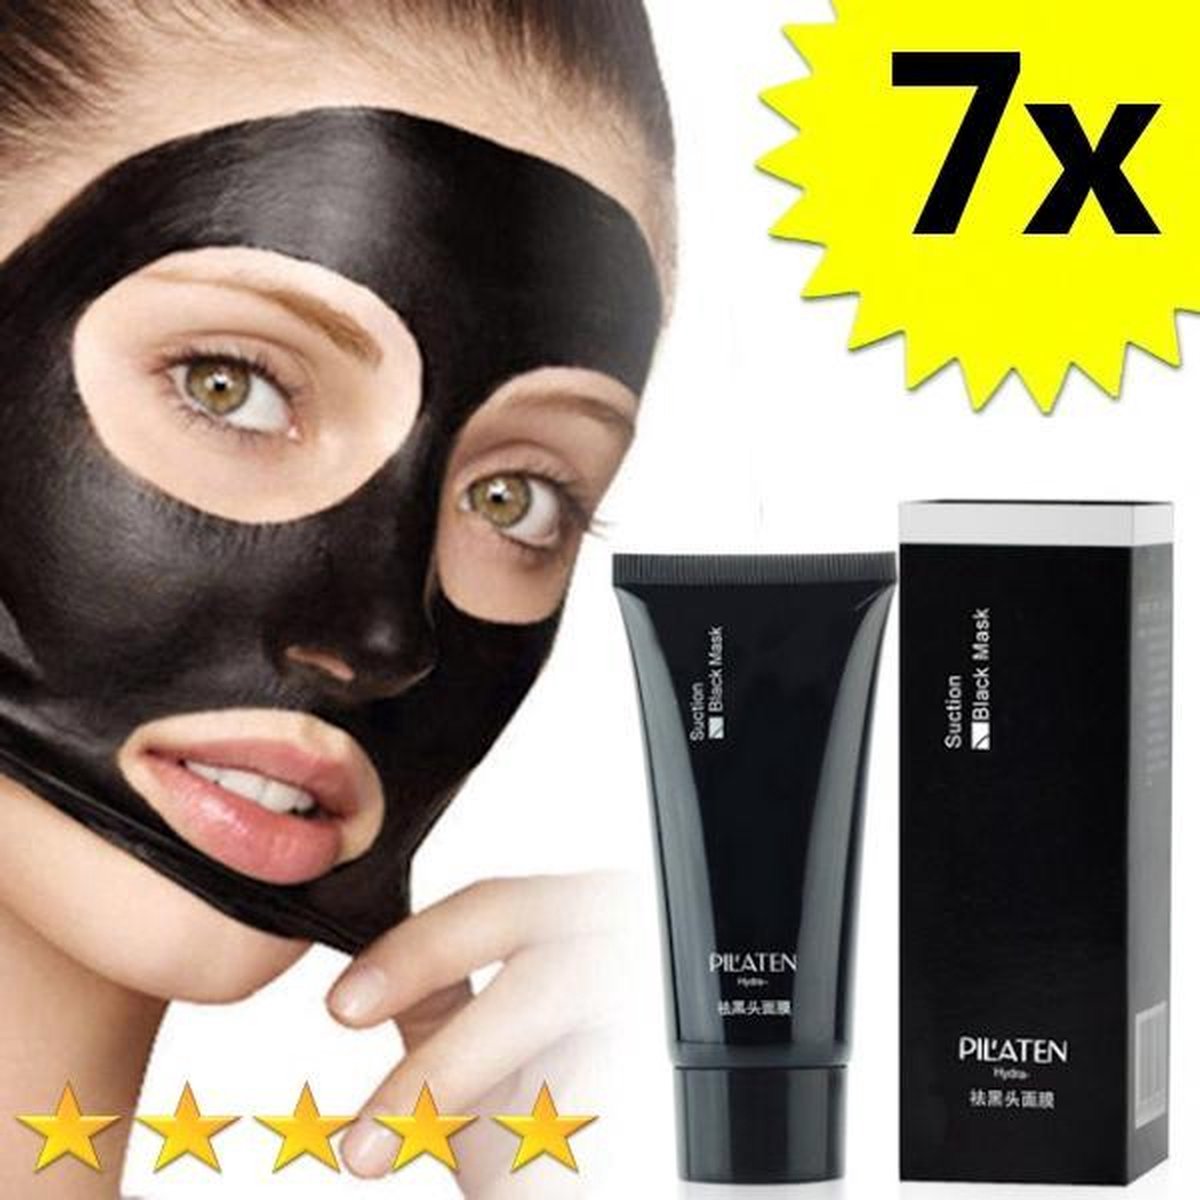 7 x Blackhead Masker Deluxe | Pilaten | Mee eters verwijderen dankzij het Zwarte masker